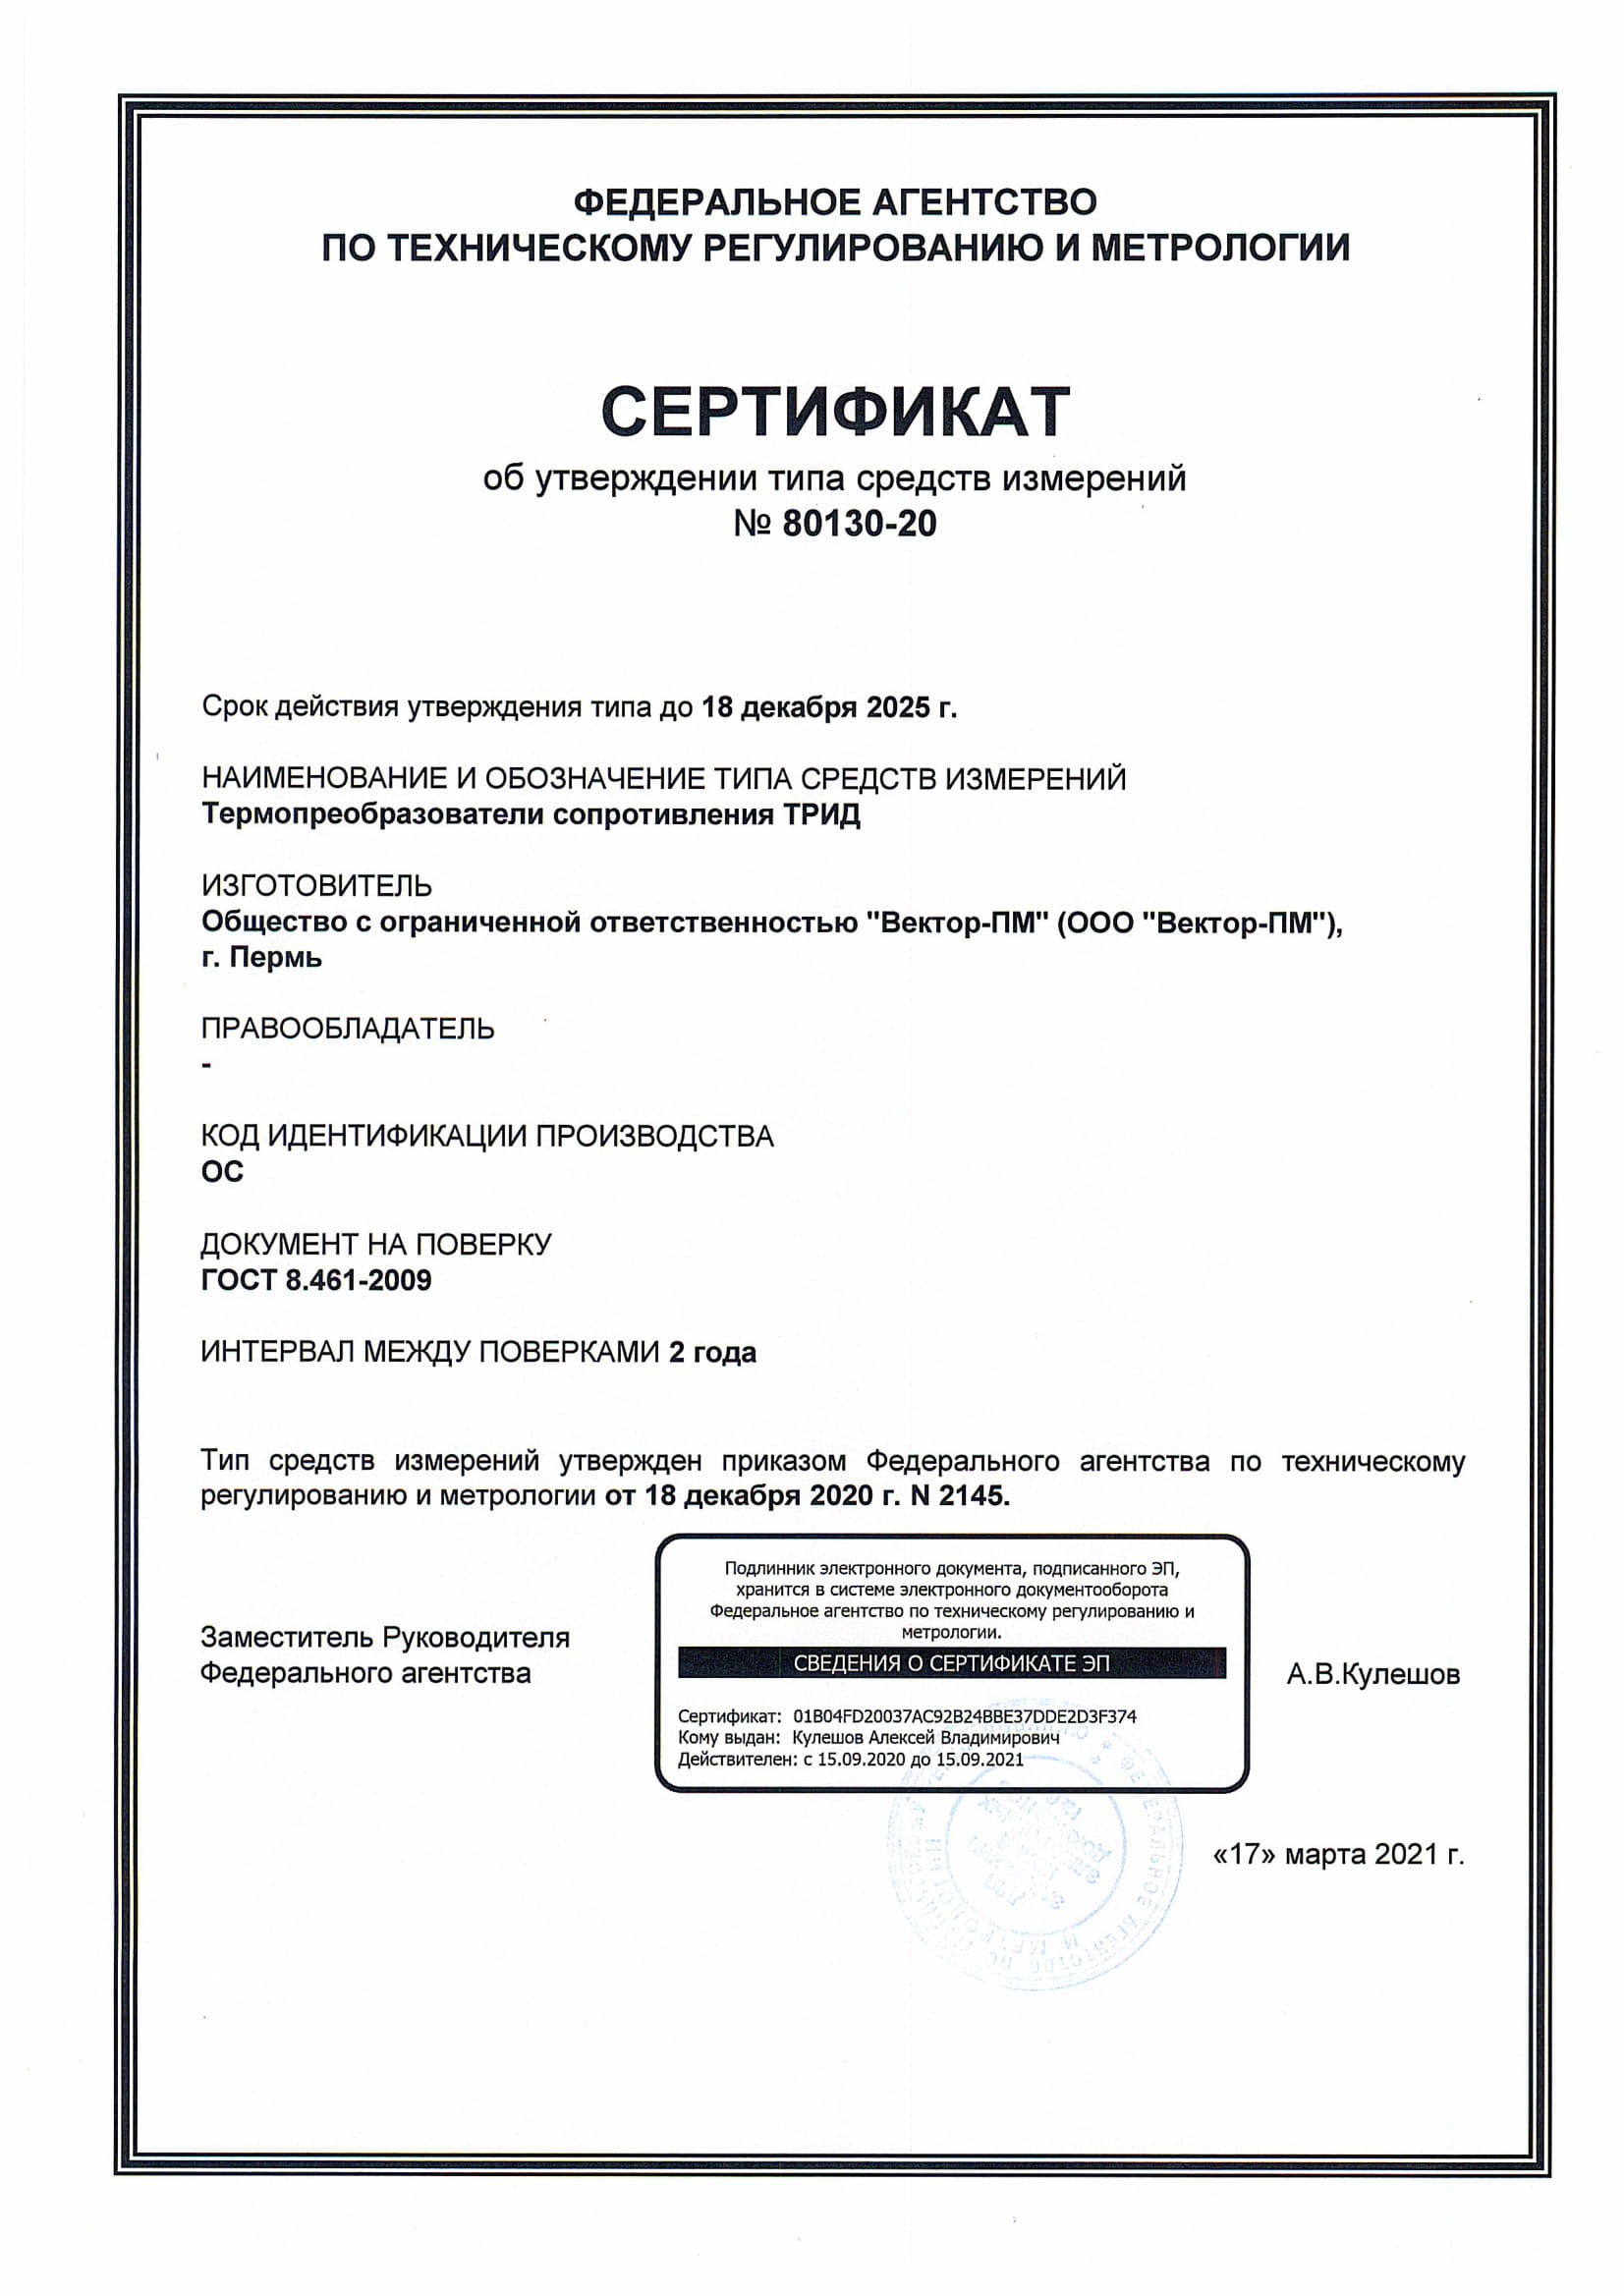 Сертификат ОТ (термосопротивления)